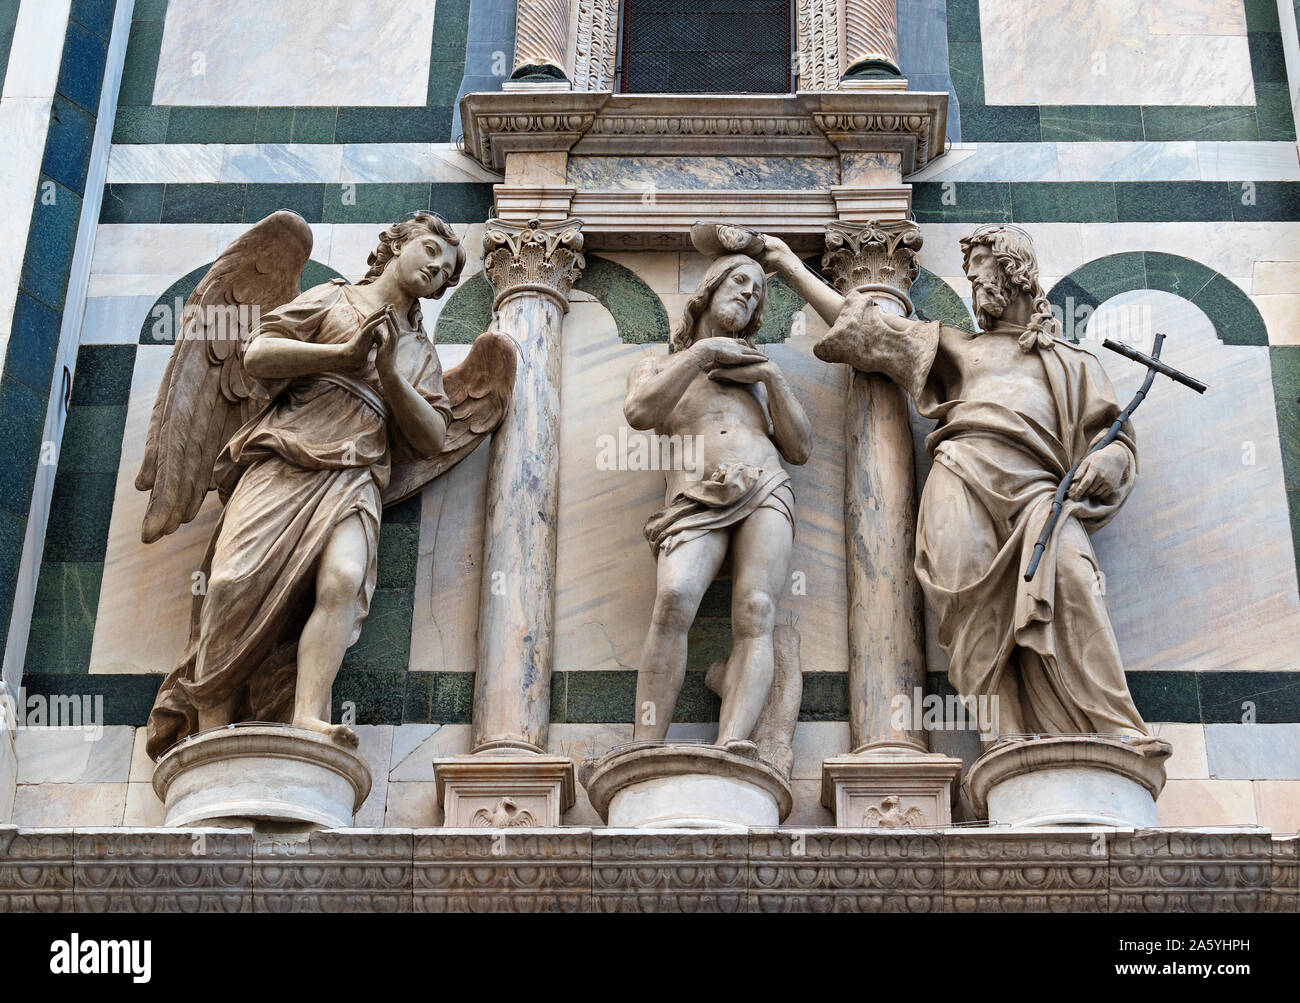 El bautismo de Cristo por Andrea Sansovino escultura en el baptisterio de Santa Maria del Fiore, Florencia, Italia. Foto de stock